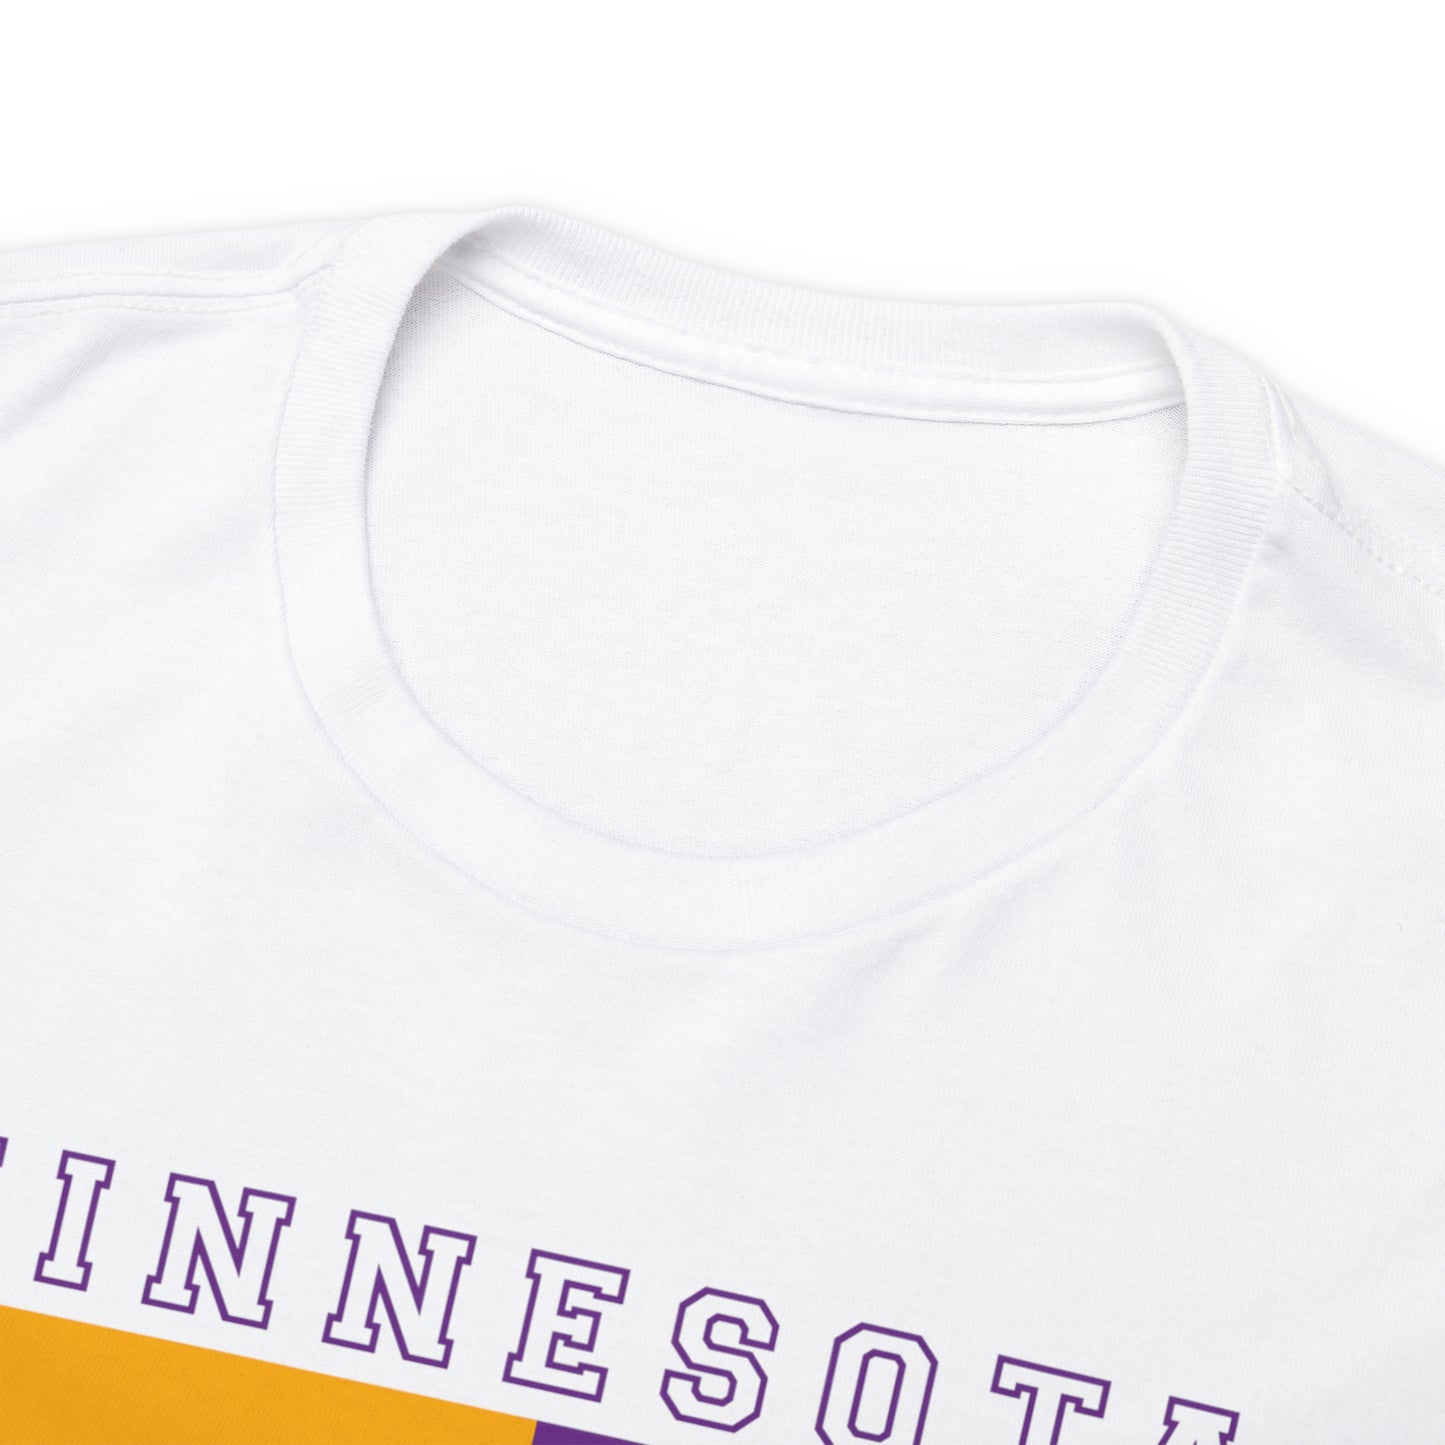 Minnesota Vikings Football Tshirt